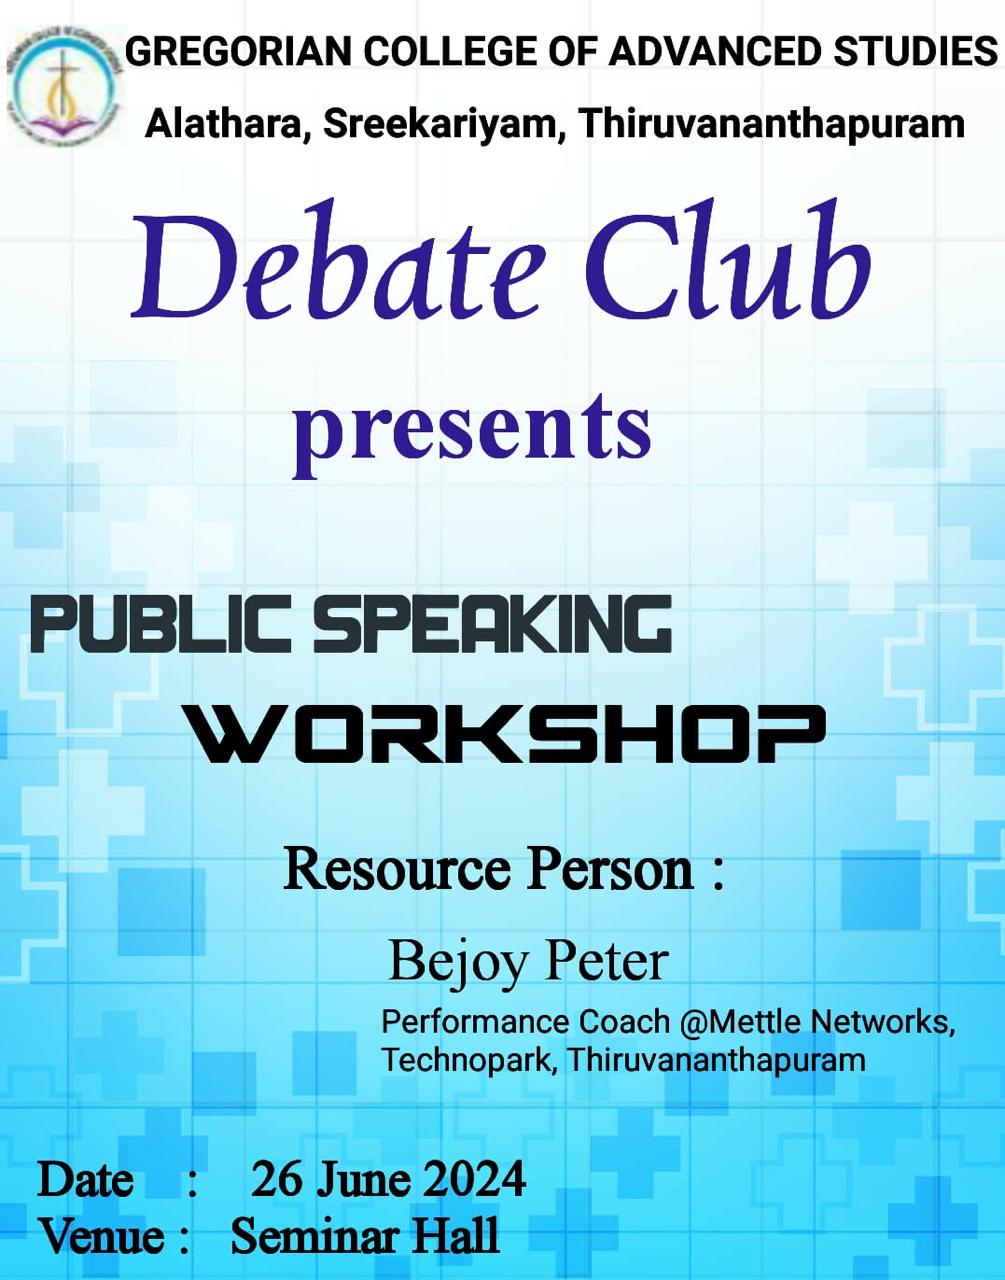 Public Speaking Workshop presented by Debate Club